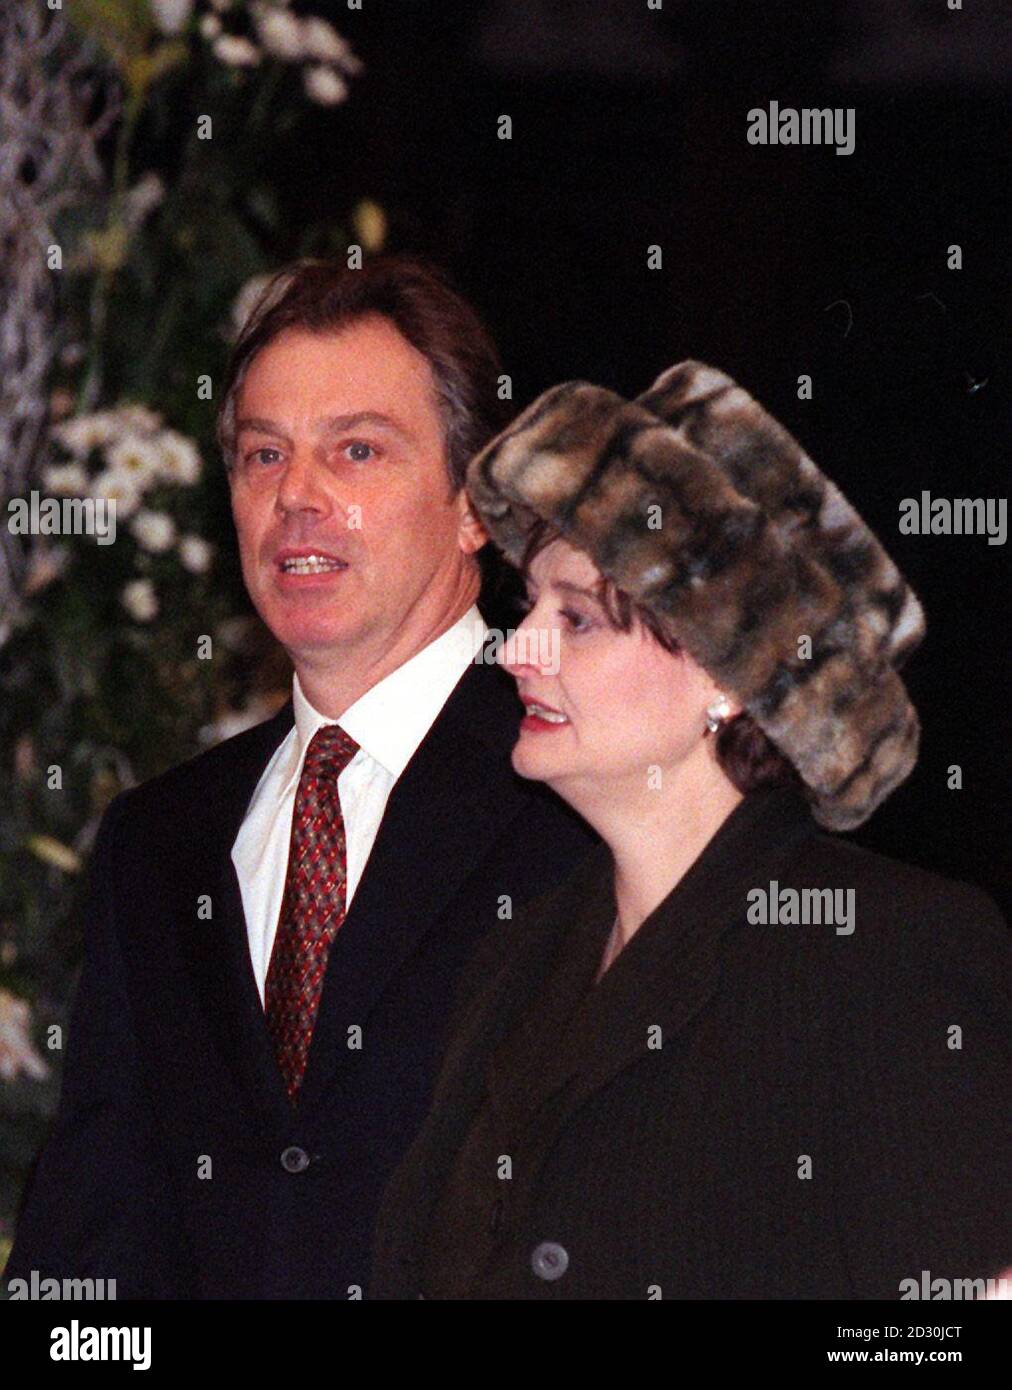 Premierminister Tony Blair besuchte in Begleitung seiner Frau Cherie den Millennium Church Service in der St. Paul's Cathedral in London. Stockfoto